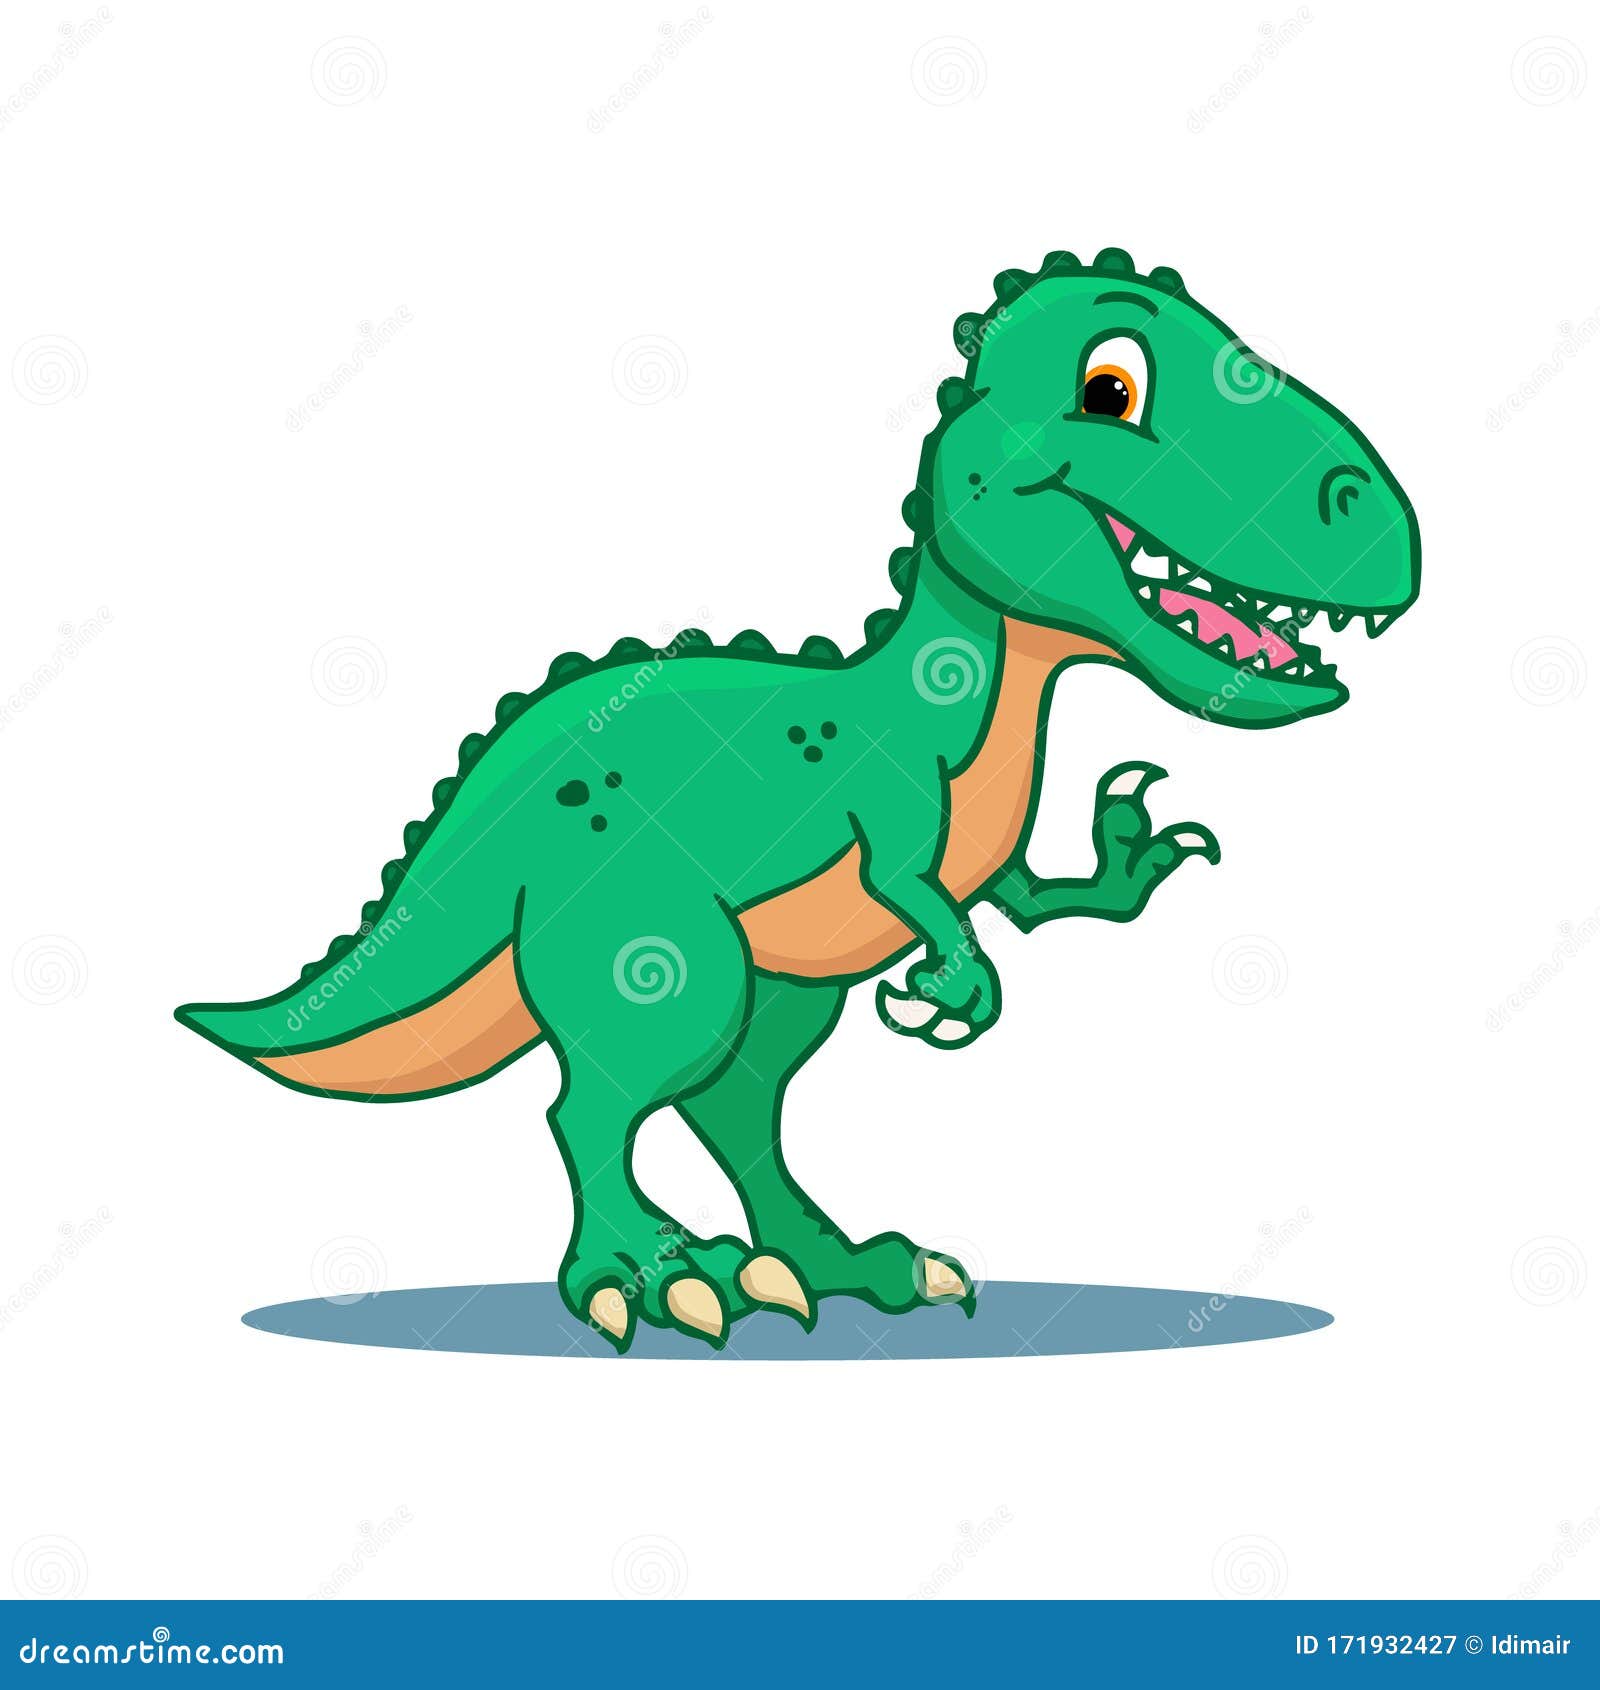 Tyrannosaurus Dinossauro Desenho Animado Personagem Etiqueta Ilustração  imagem vetorial de interactimages© 524521350